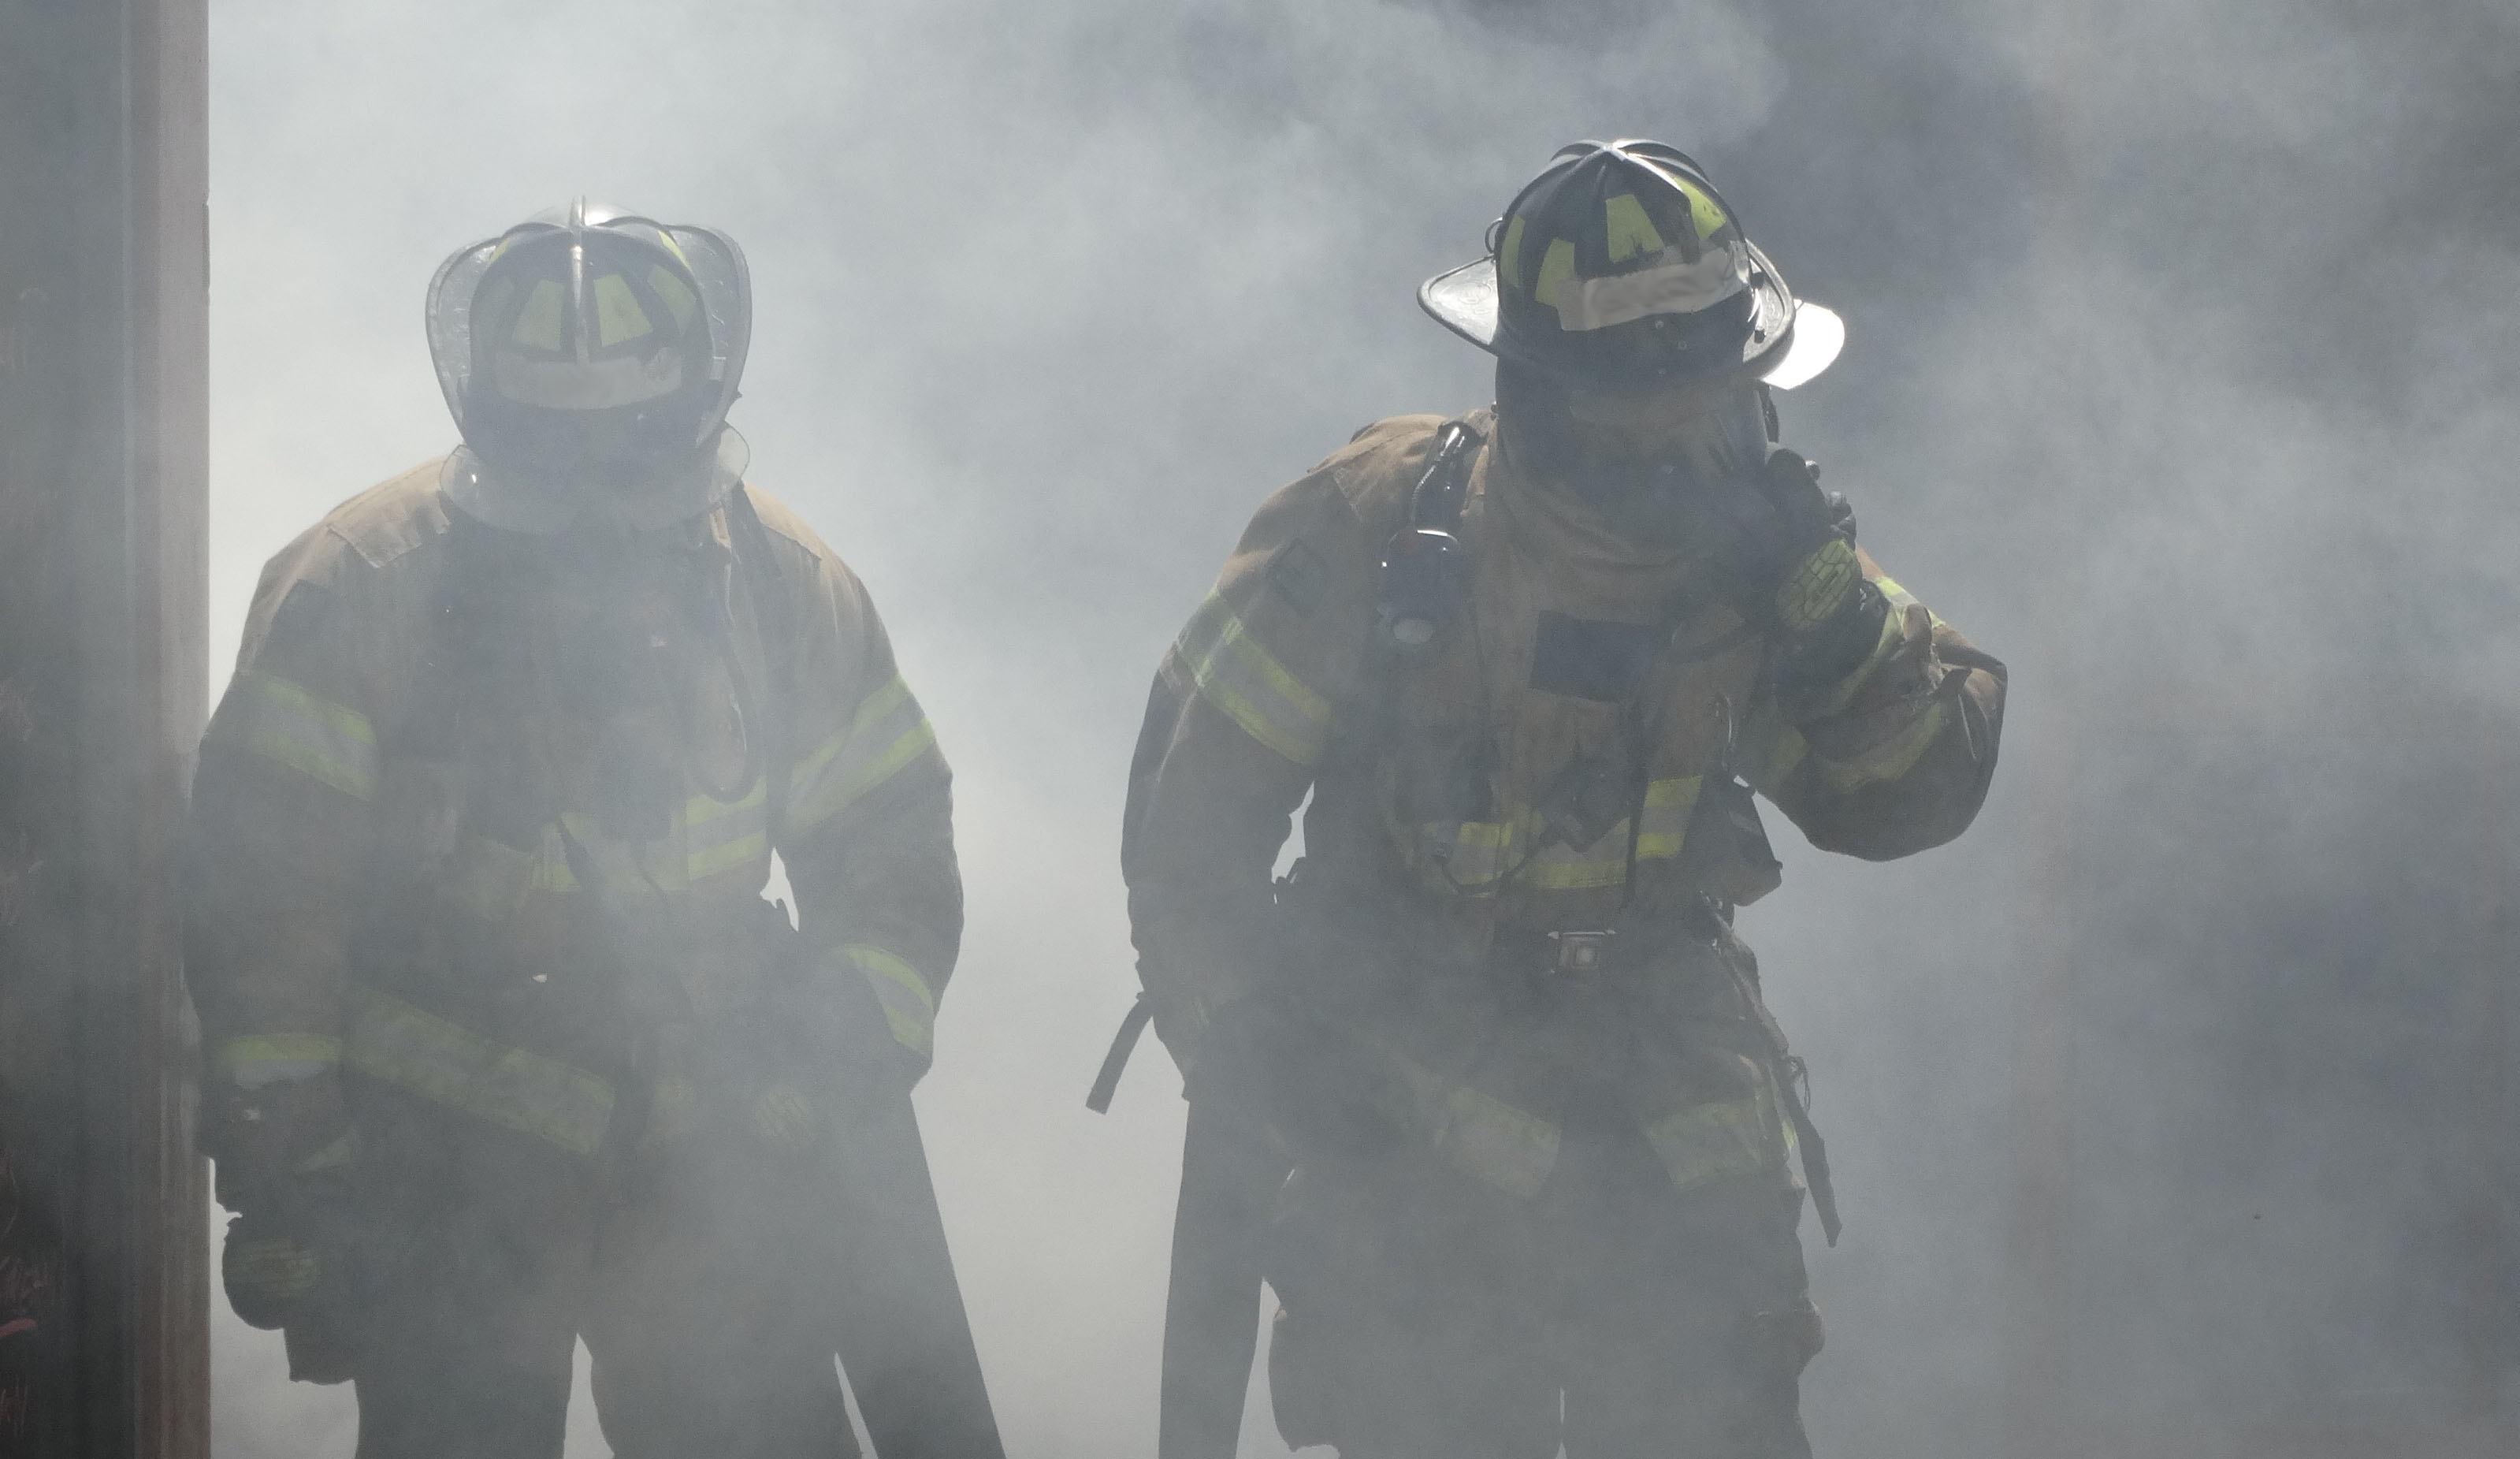 two firefighters walking through smoke in gear